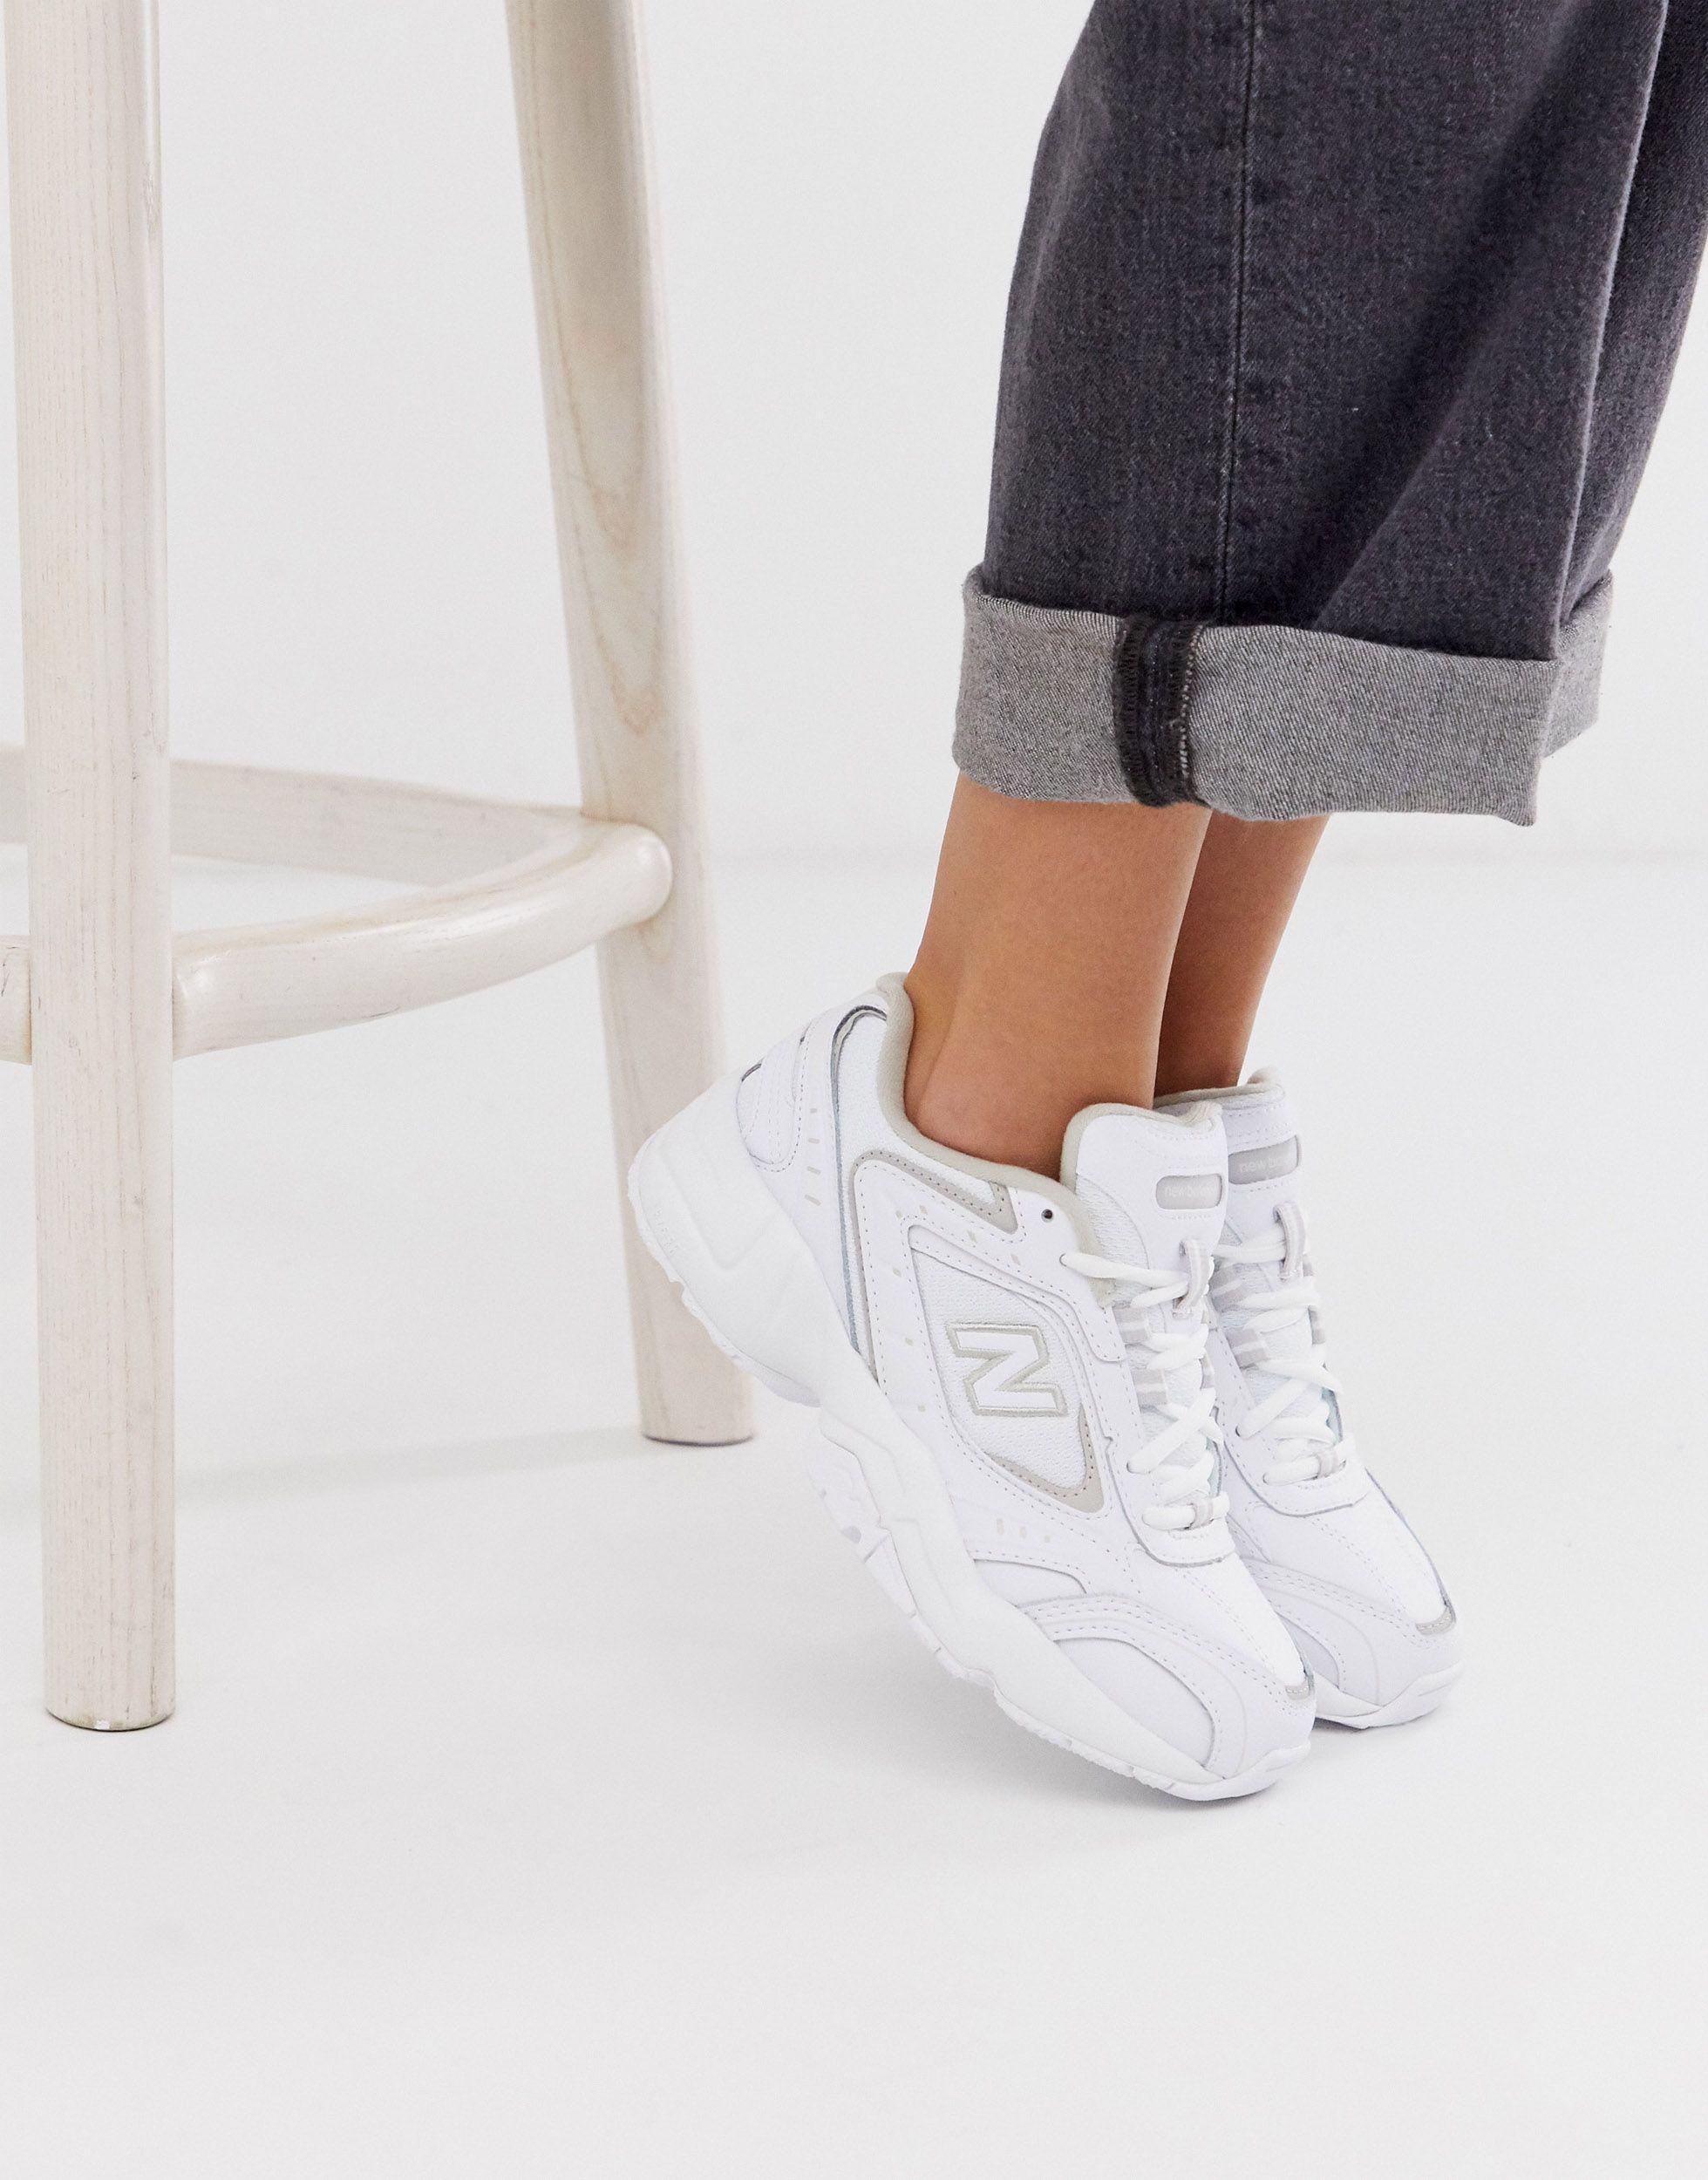 New Balance – 452 – e sneaker in Weiß | Lyst DE